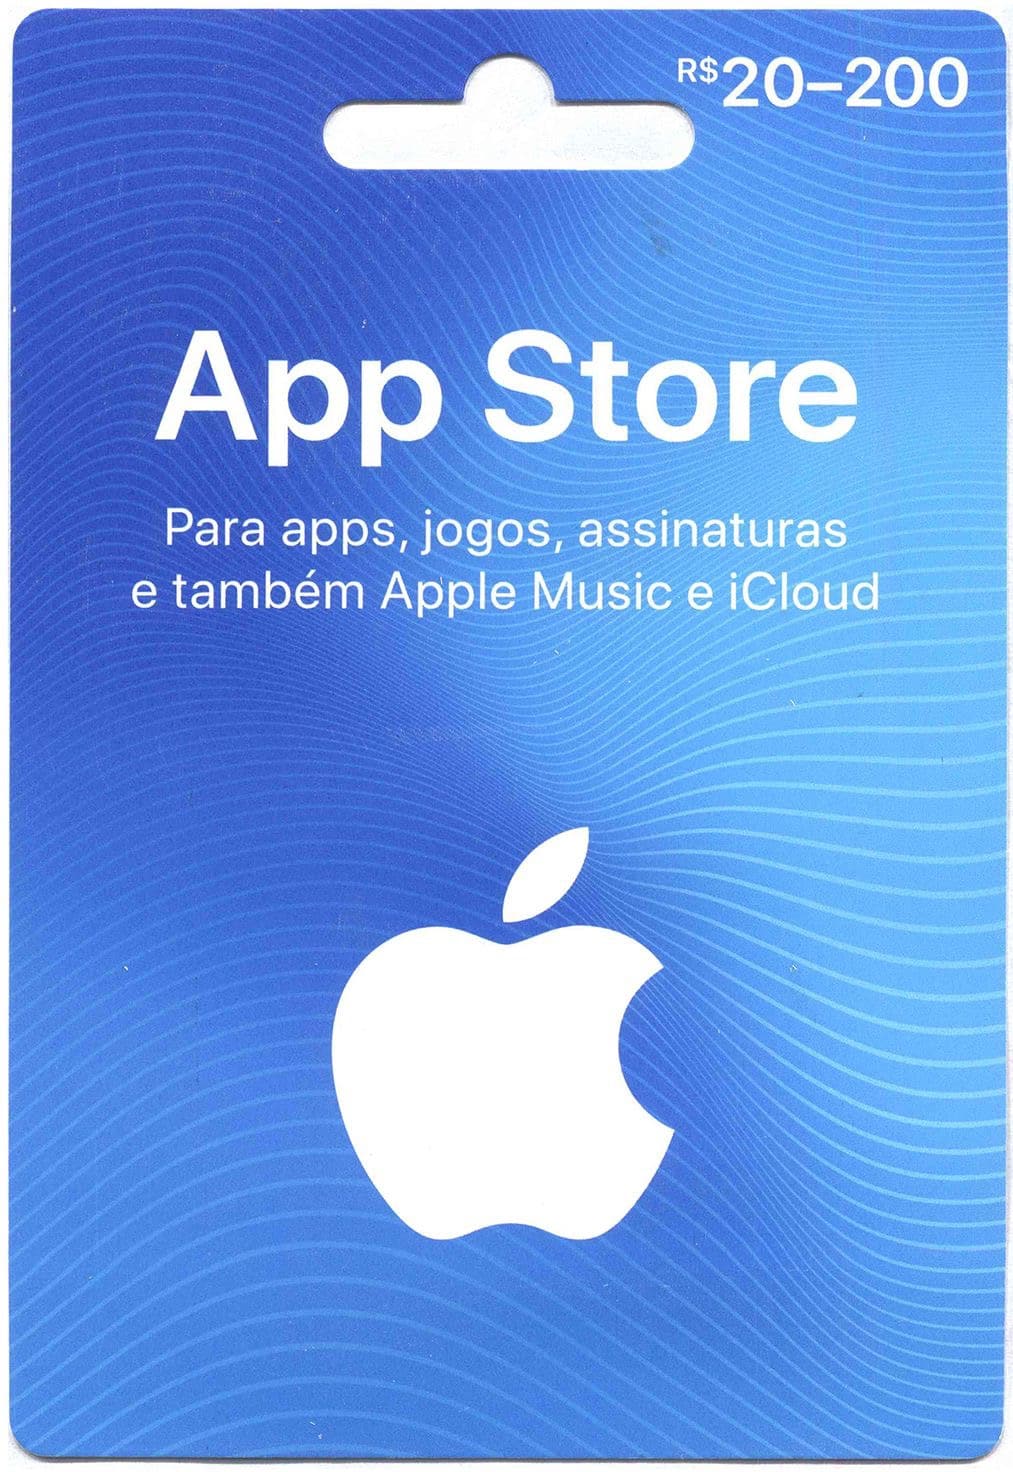 Cartão presente da App Store